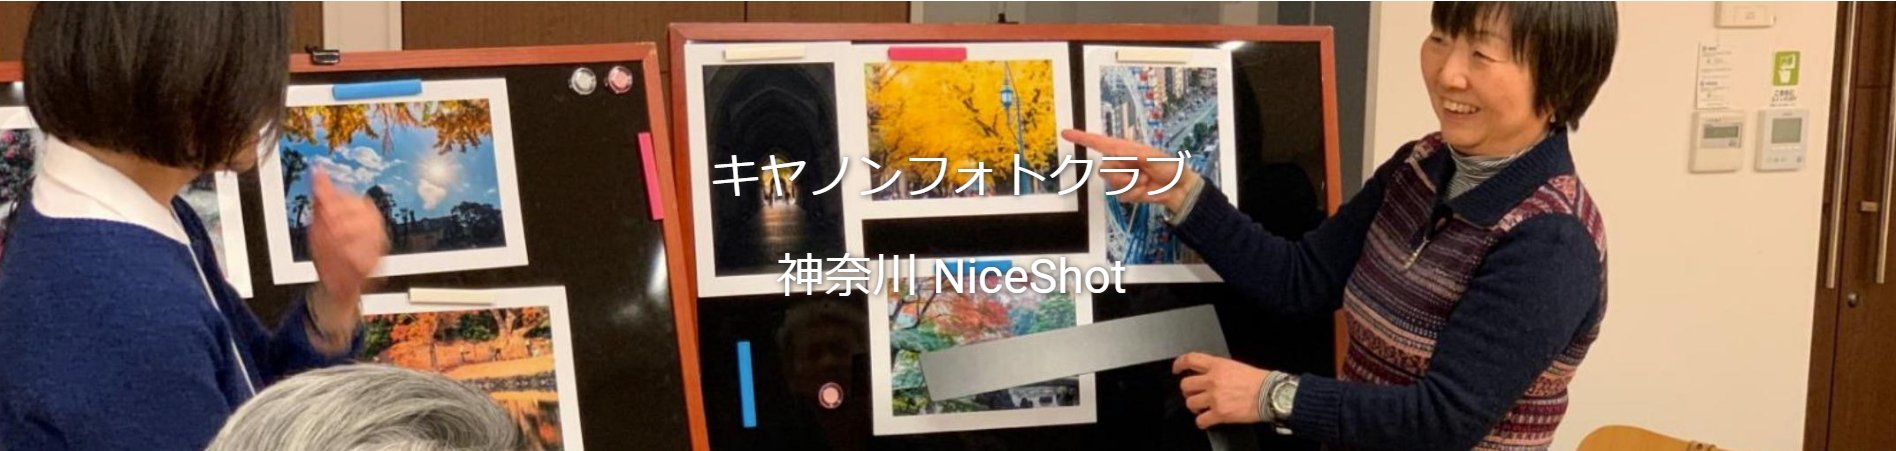 キヤノンフォトクラブ「神奈川NiceShot」